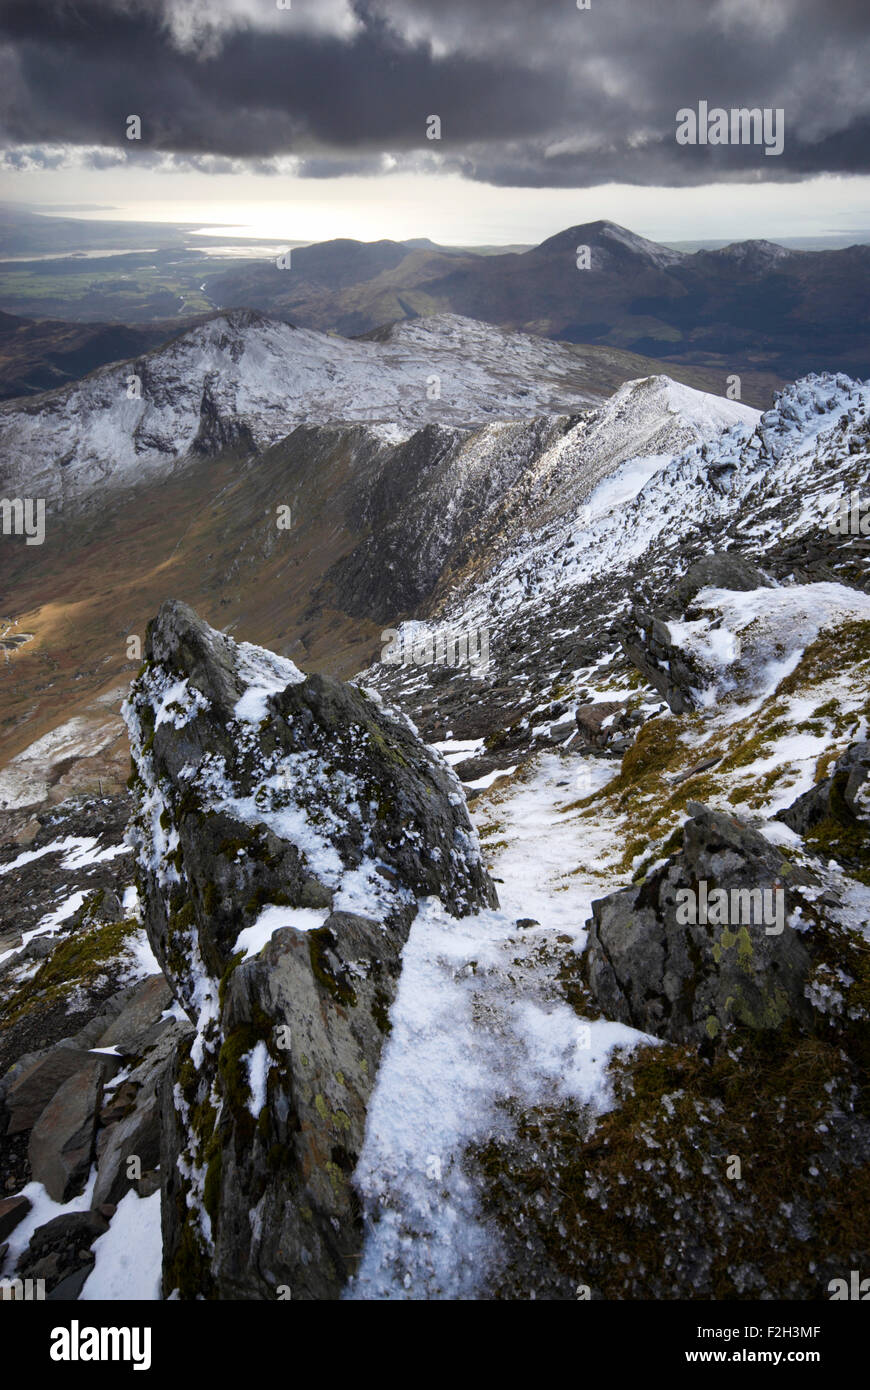 La vista desde la cima cubierta de nieve del Snowdon en el Parque Nacional de Snowdonia, Gales, Reino Unido Foto de stock